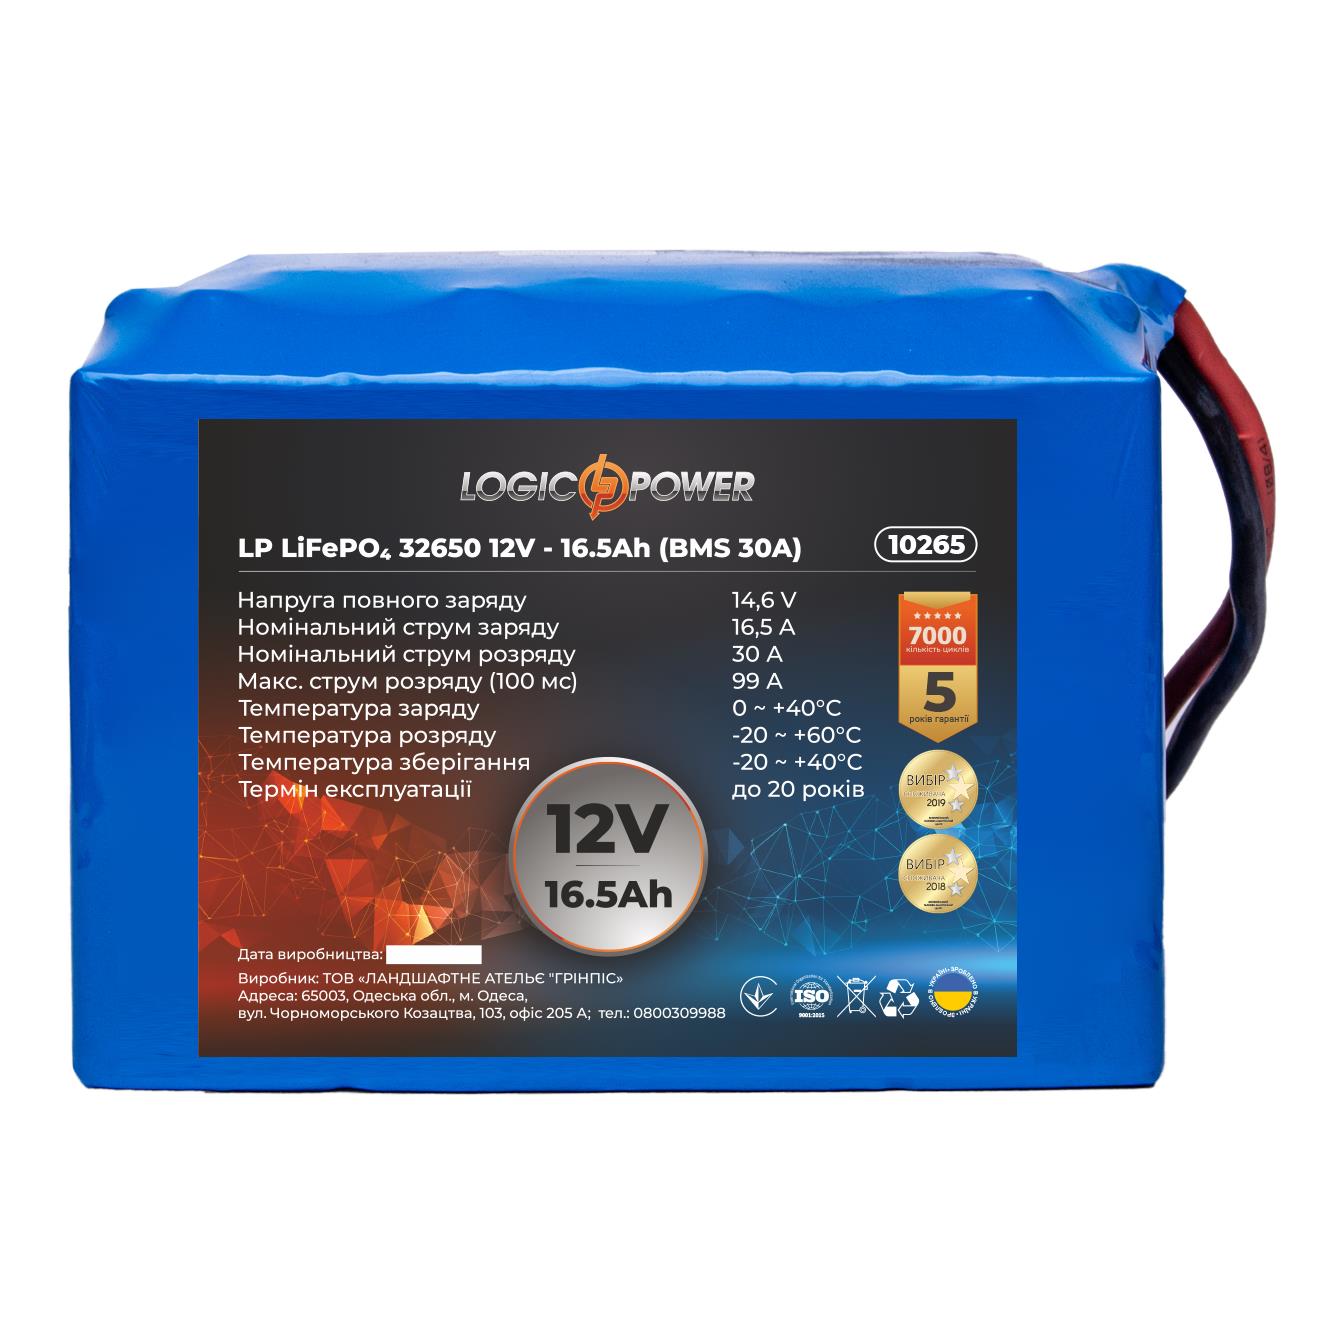 Акумулятор літій-залізо-фосфатний LogicPower LP LiFePO4 32650 12V - 16.5 Ah (BMS 30A) (10265) в інтернет-магазині, головне фото